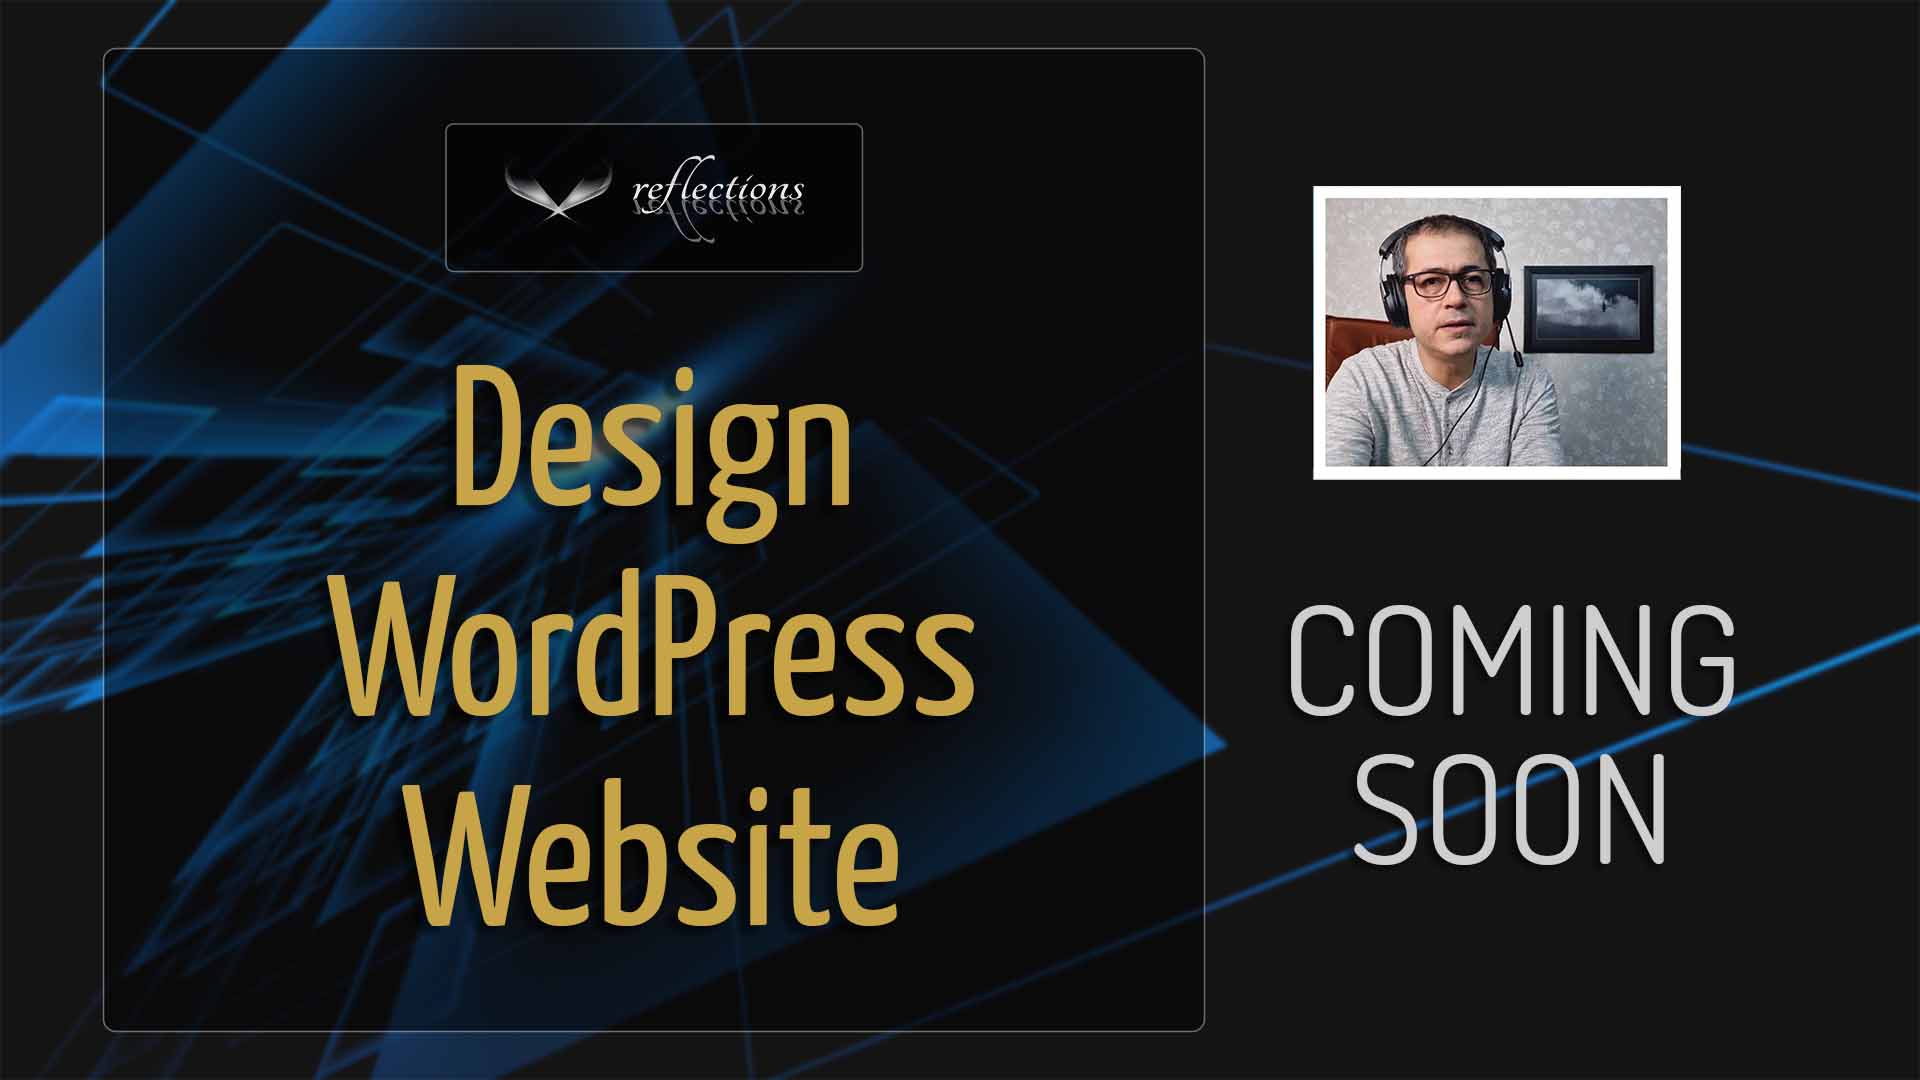 How to Design WordPress Website